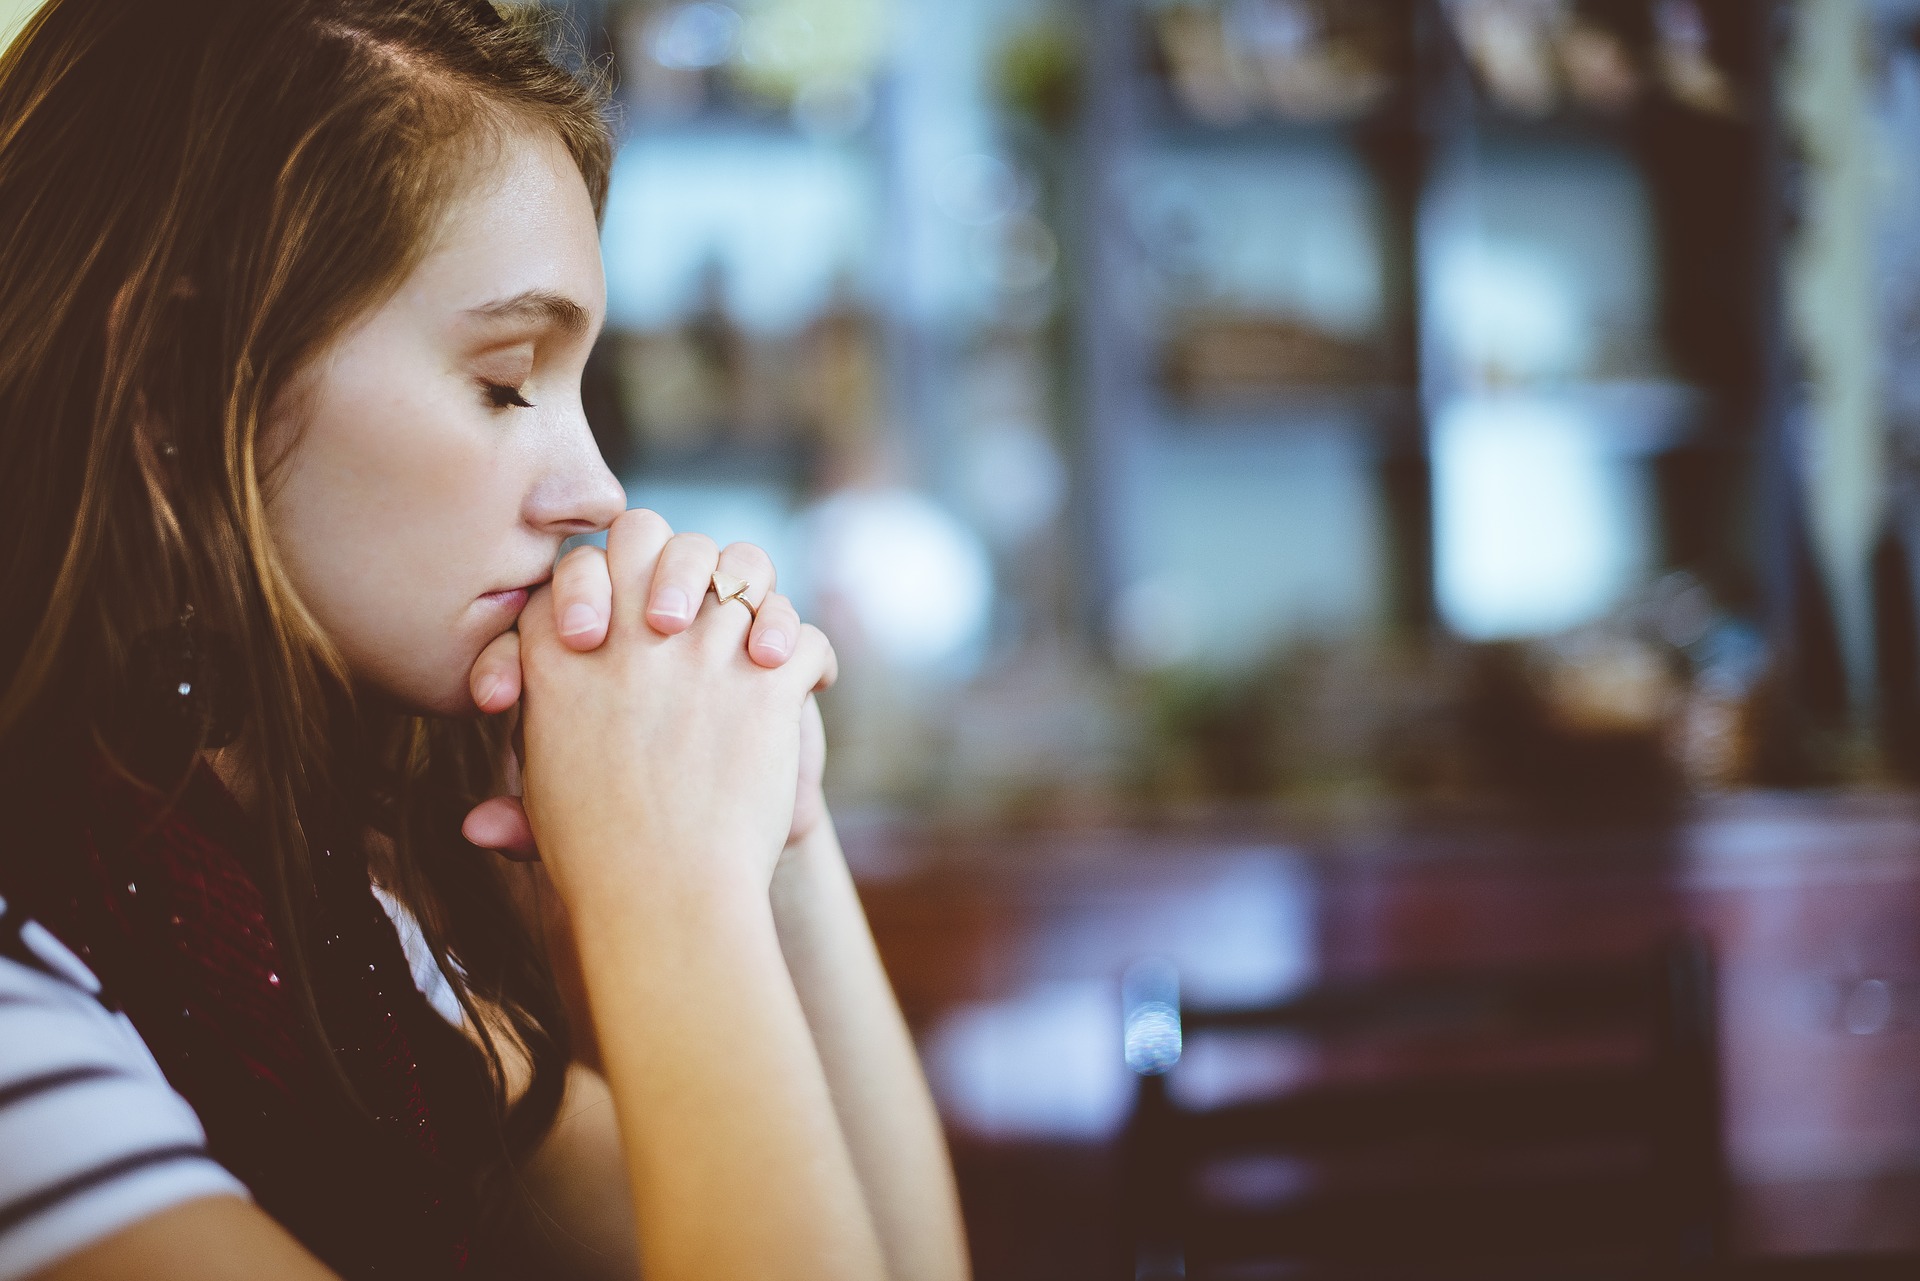 כל אשת איש צריכה להכיר: אילו תפילות ביהדות קיימות לנשים?